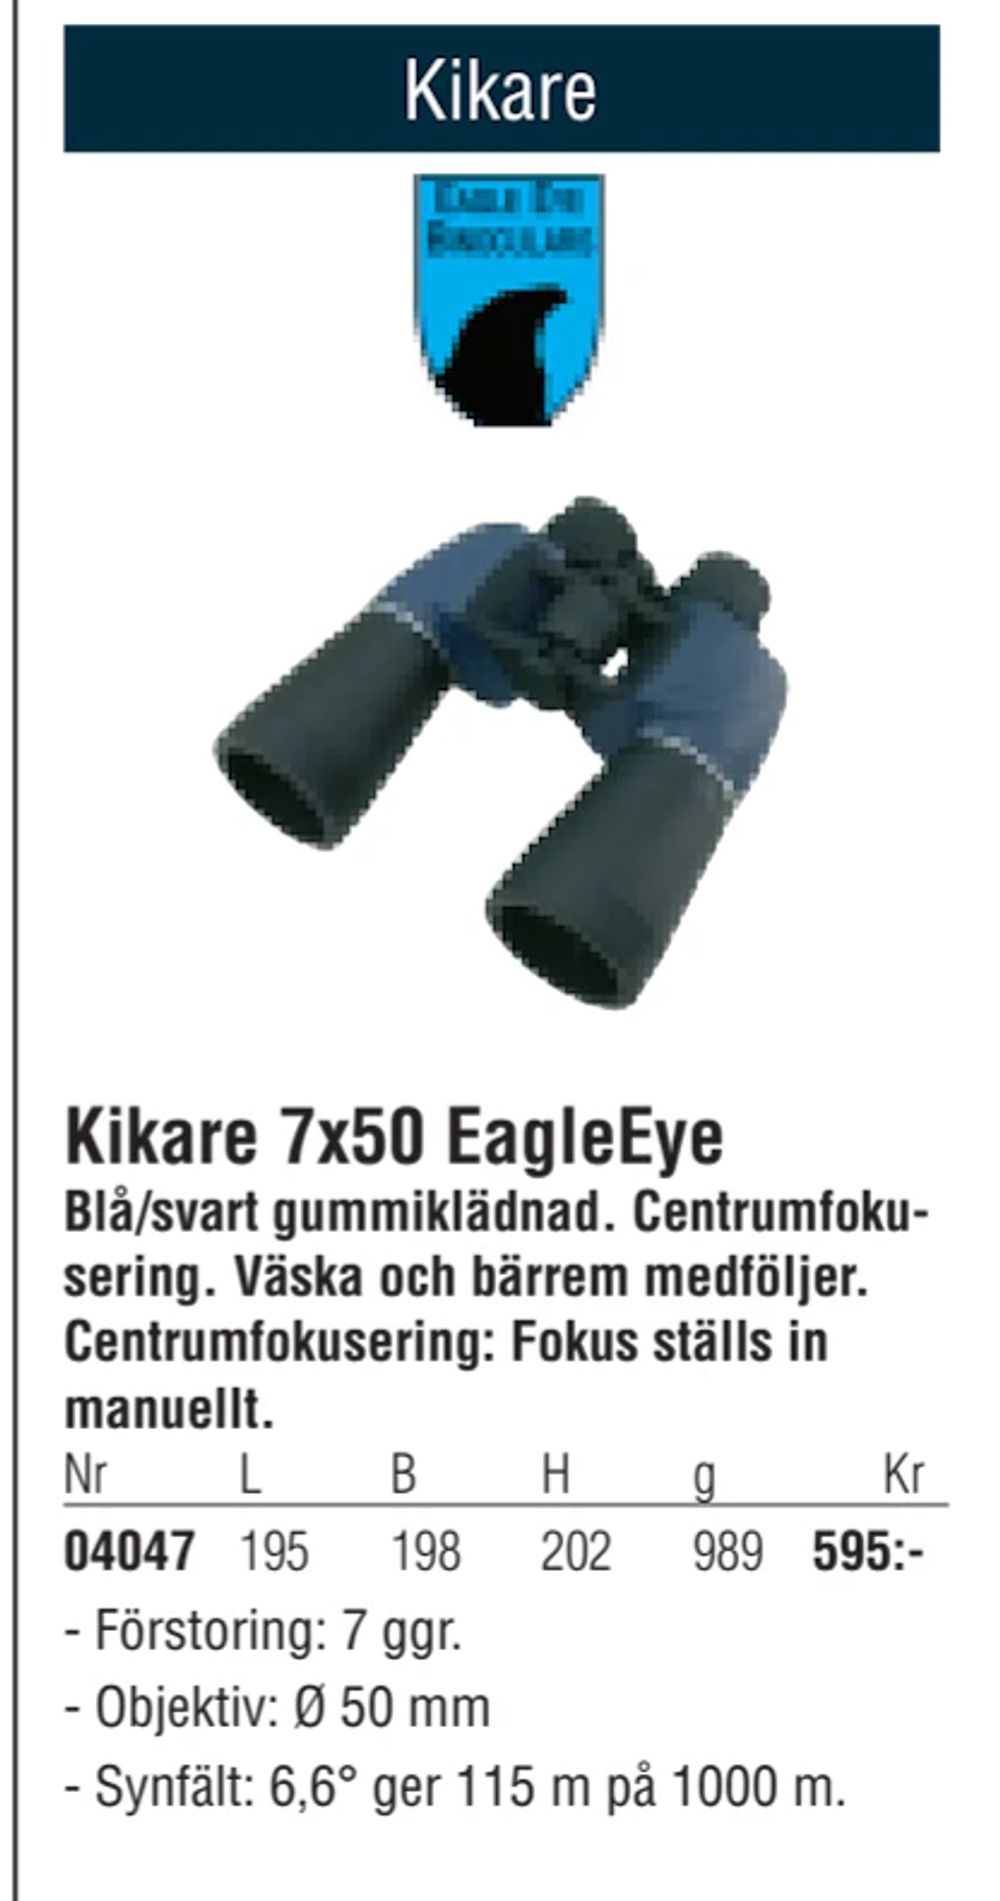 Erbjudanden på Kikare 7x50 EagleEye från Erlandsons Brygga för 595 kr